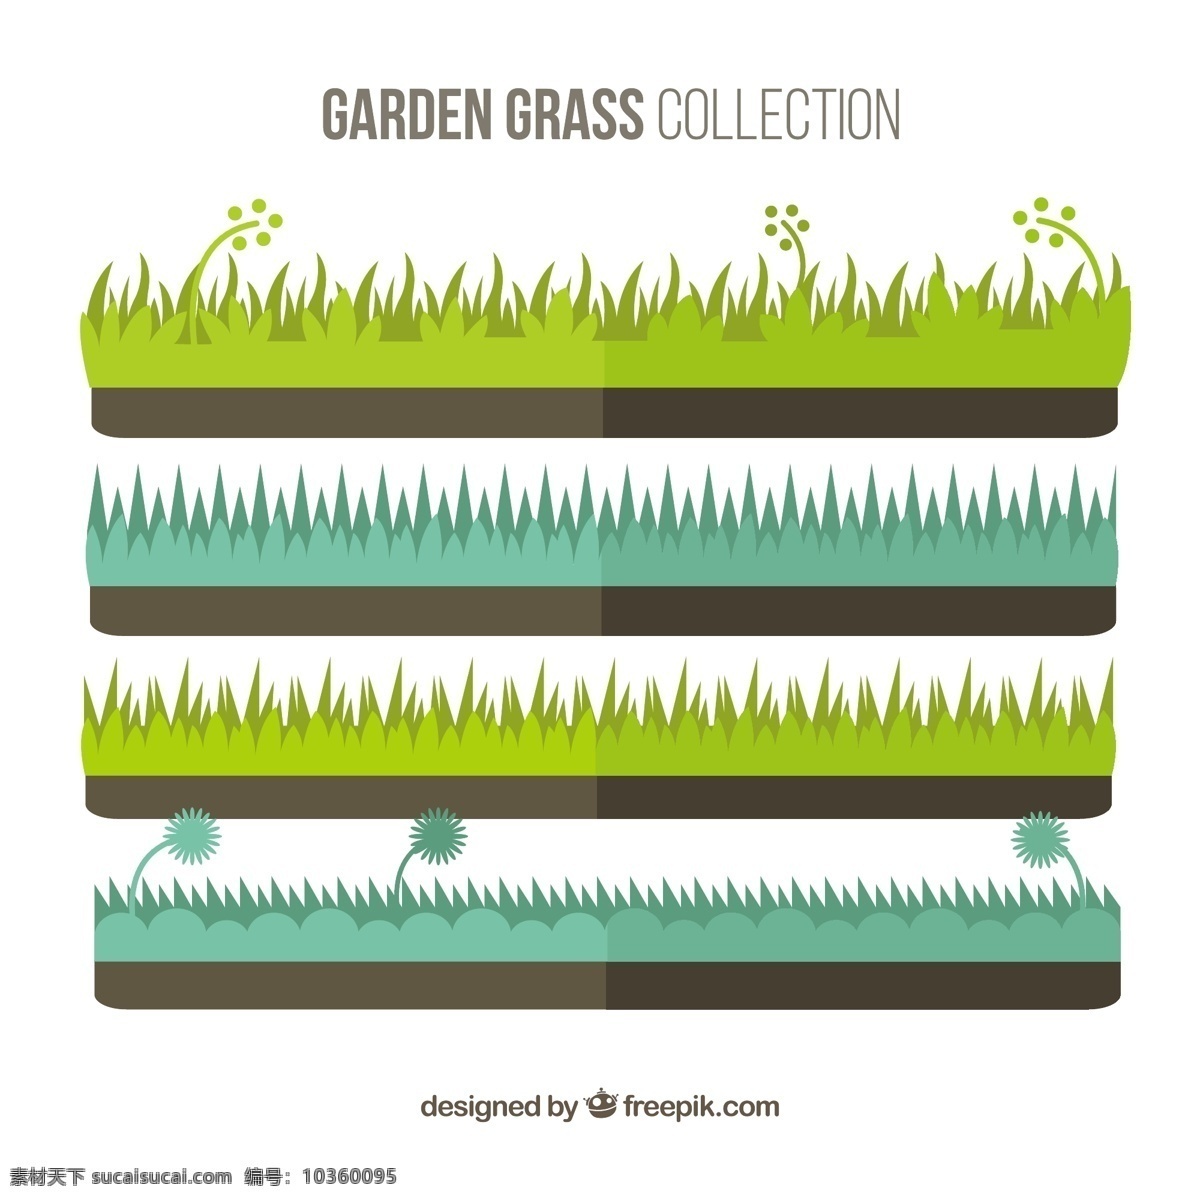 平面设计 花园 草 收藏 自然 扁 园 轮廓 植物 园艺 种植 草坪 采集 培育 白色